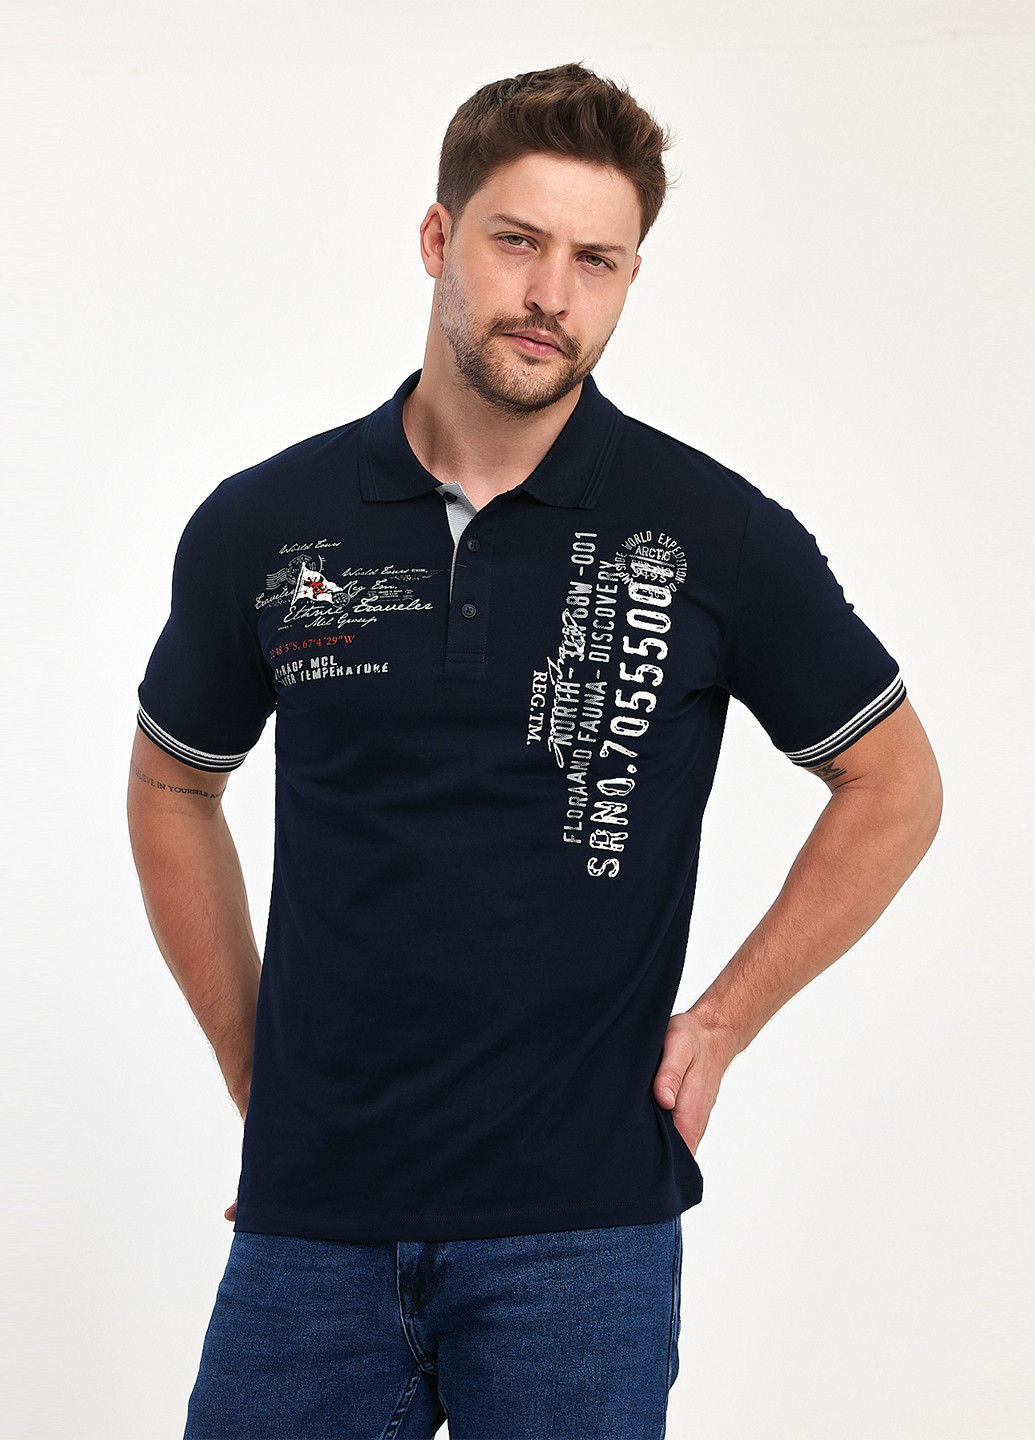 Темно-синяя футболка-поло для мужчин Trend Collection с надписью